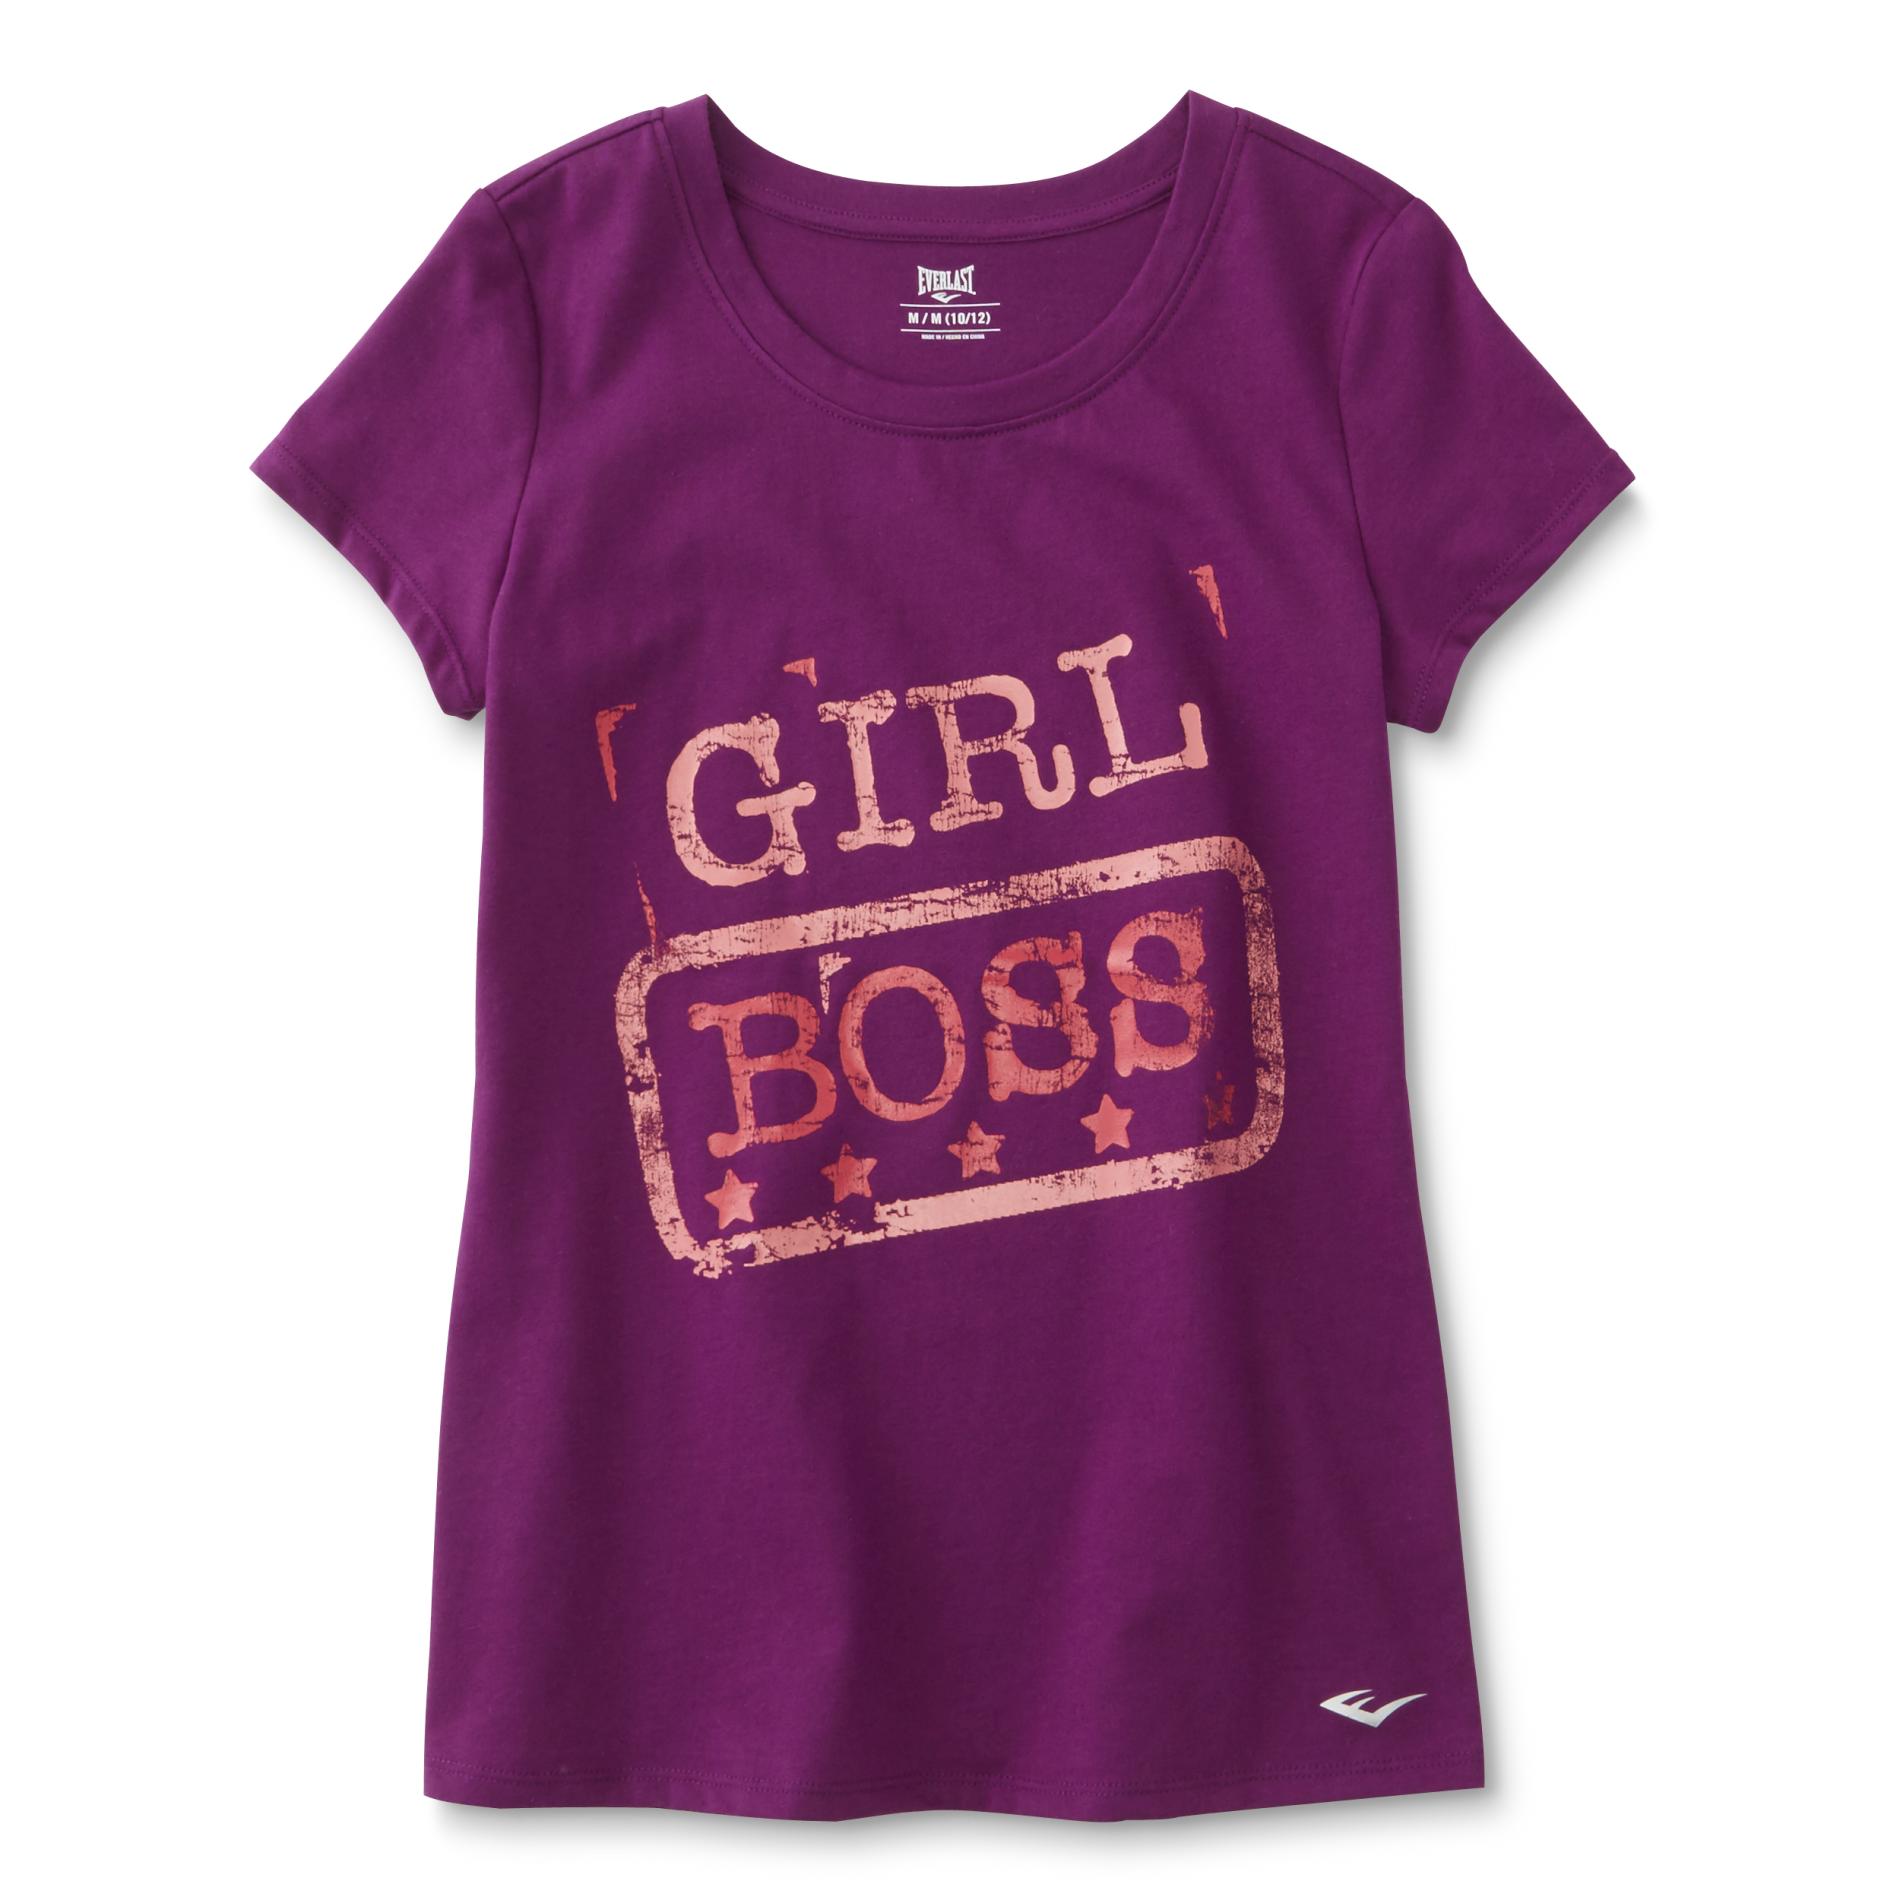 Everlast&reg; Girl's Athletic T-Shirt - Girl Boss